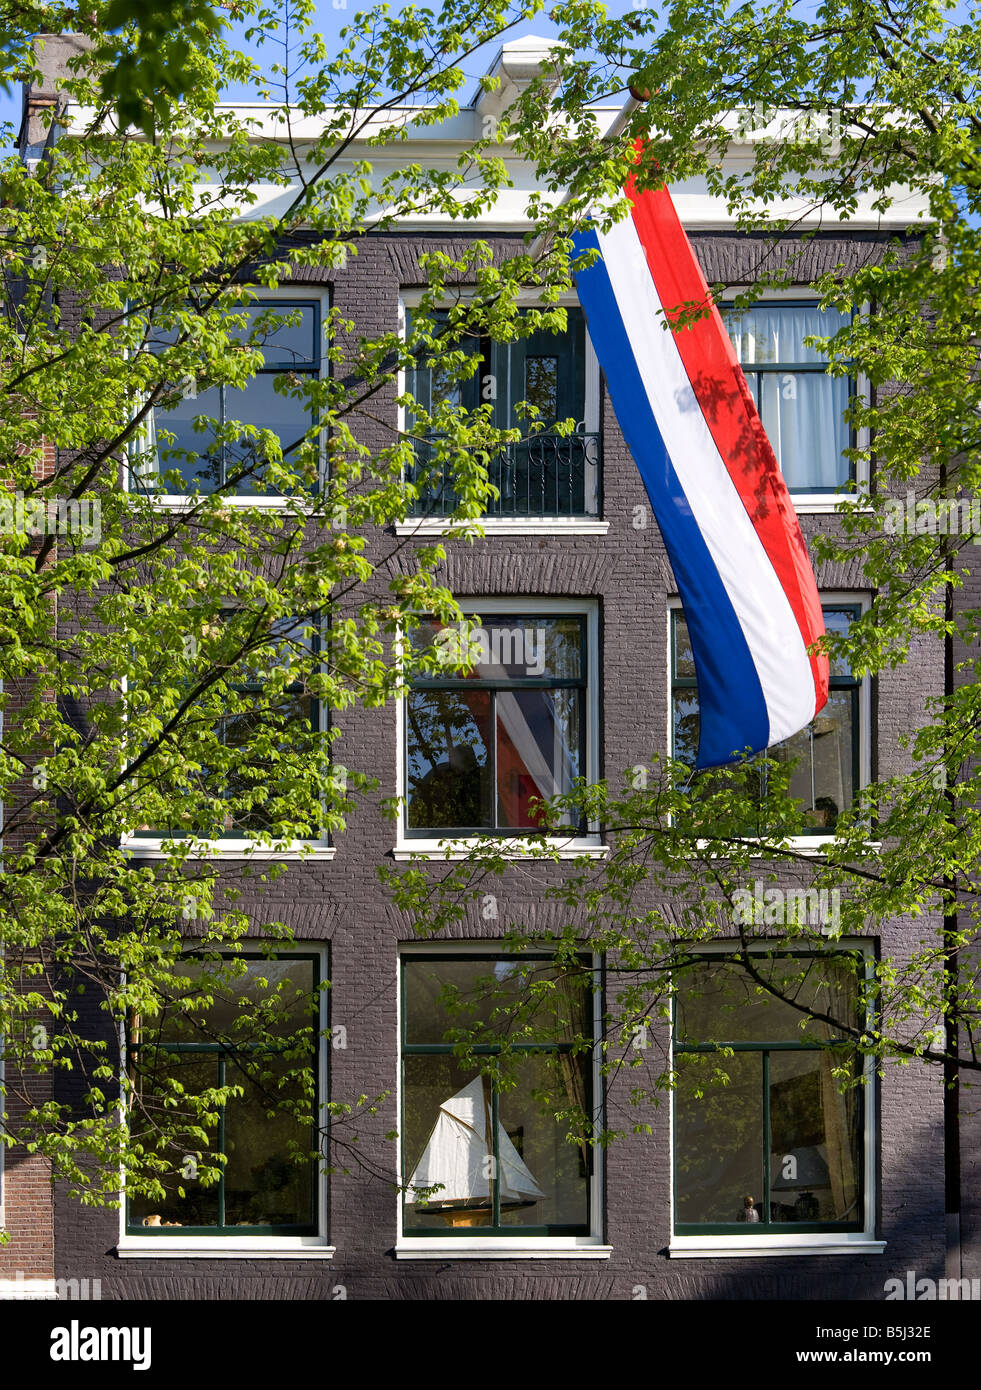 Amsterdam. Casa su un canale nel quartiere Jordaan con olandese bandiera nazionale e un modello di barca a vela sul davanzale. La primavera. Foto Stock